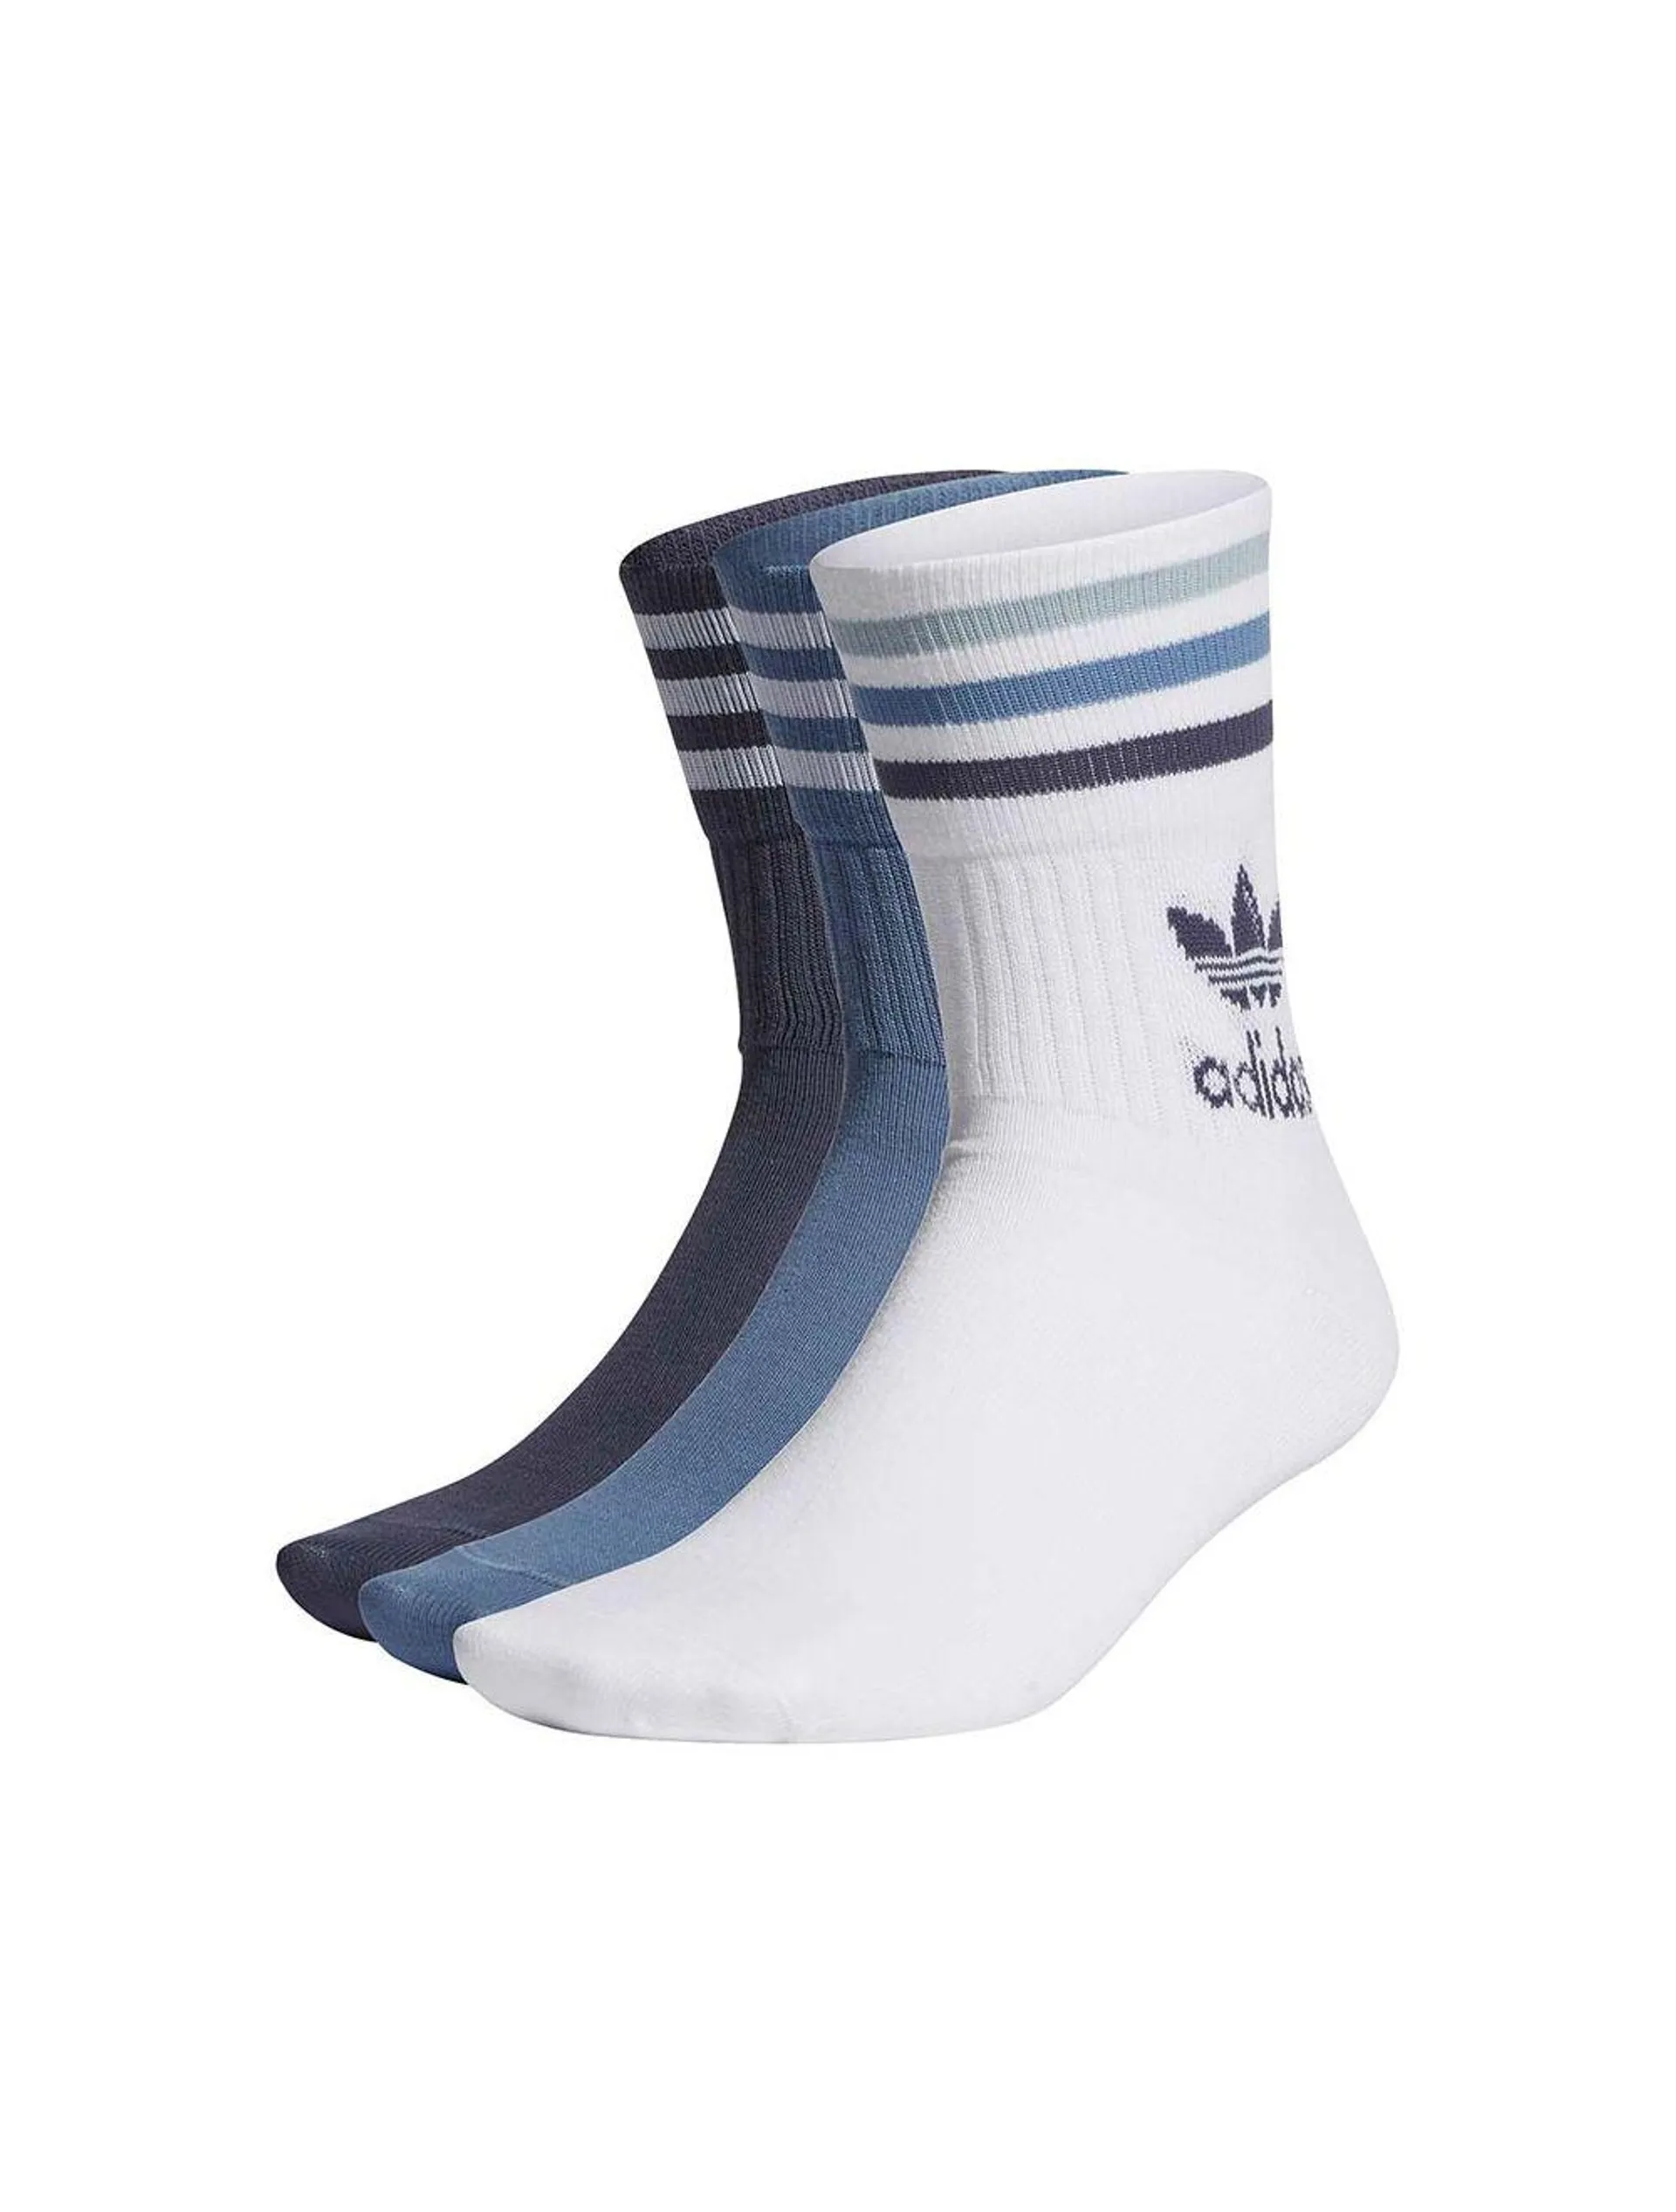 adidas Originals Mid Cut Crew Socks 3 Pairs White Blue